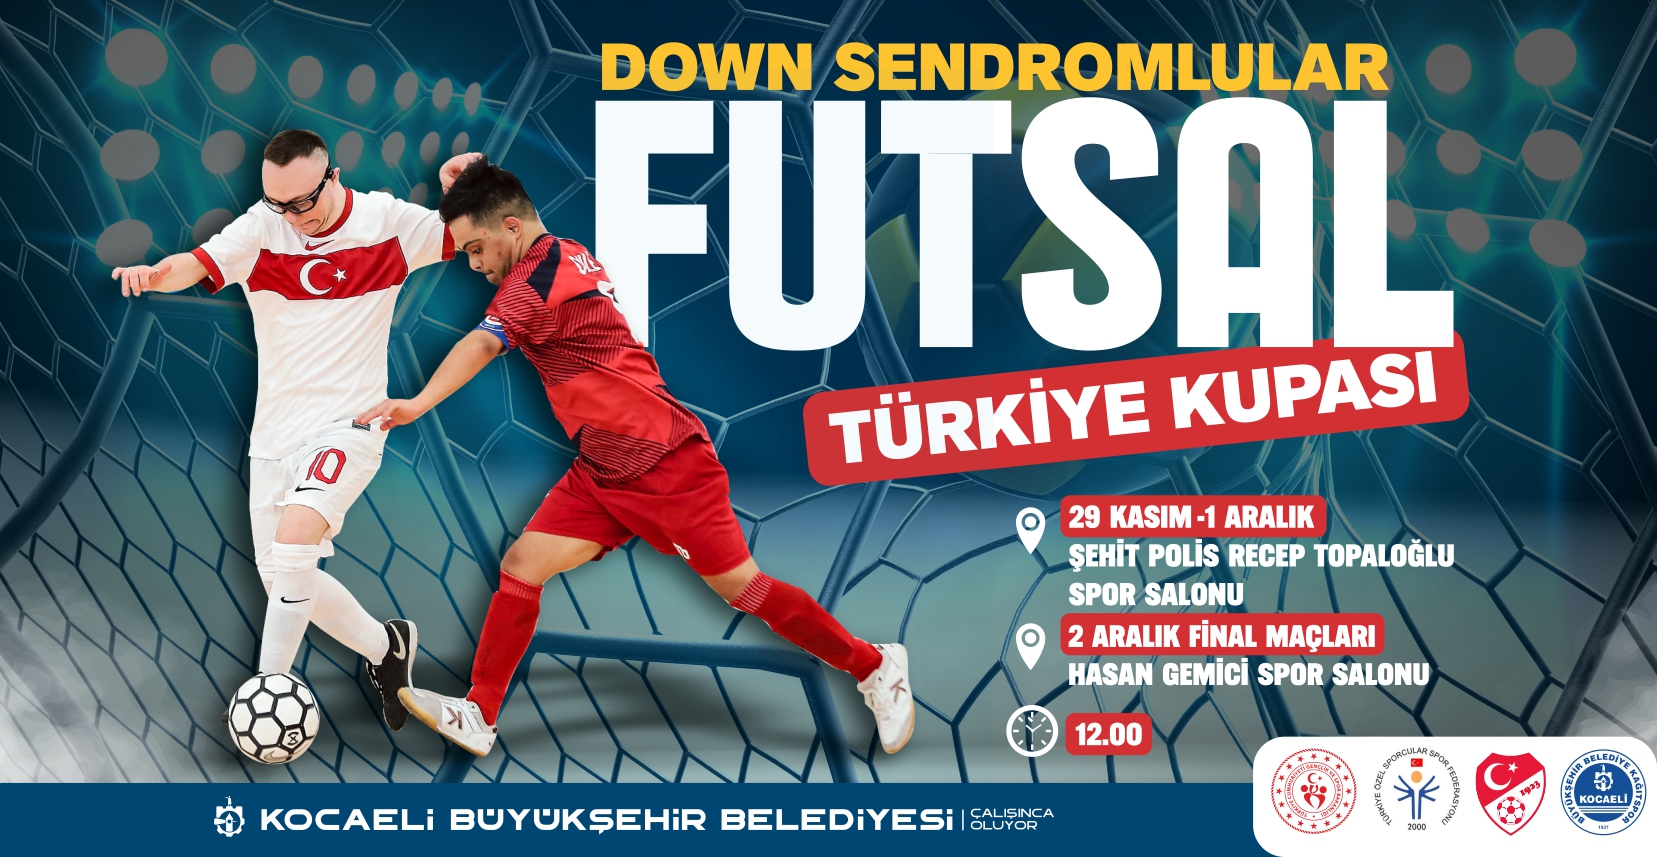 Down Sendromlular Futsal Türkiye Kupası (29 Kasım - 1 Aralık)